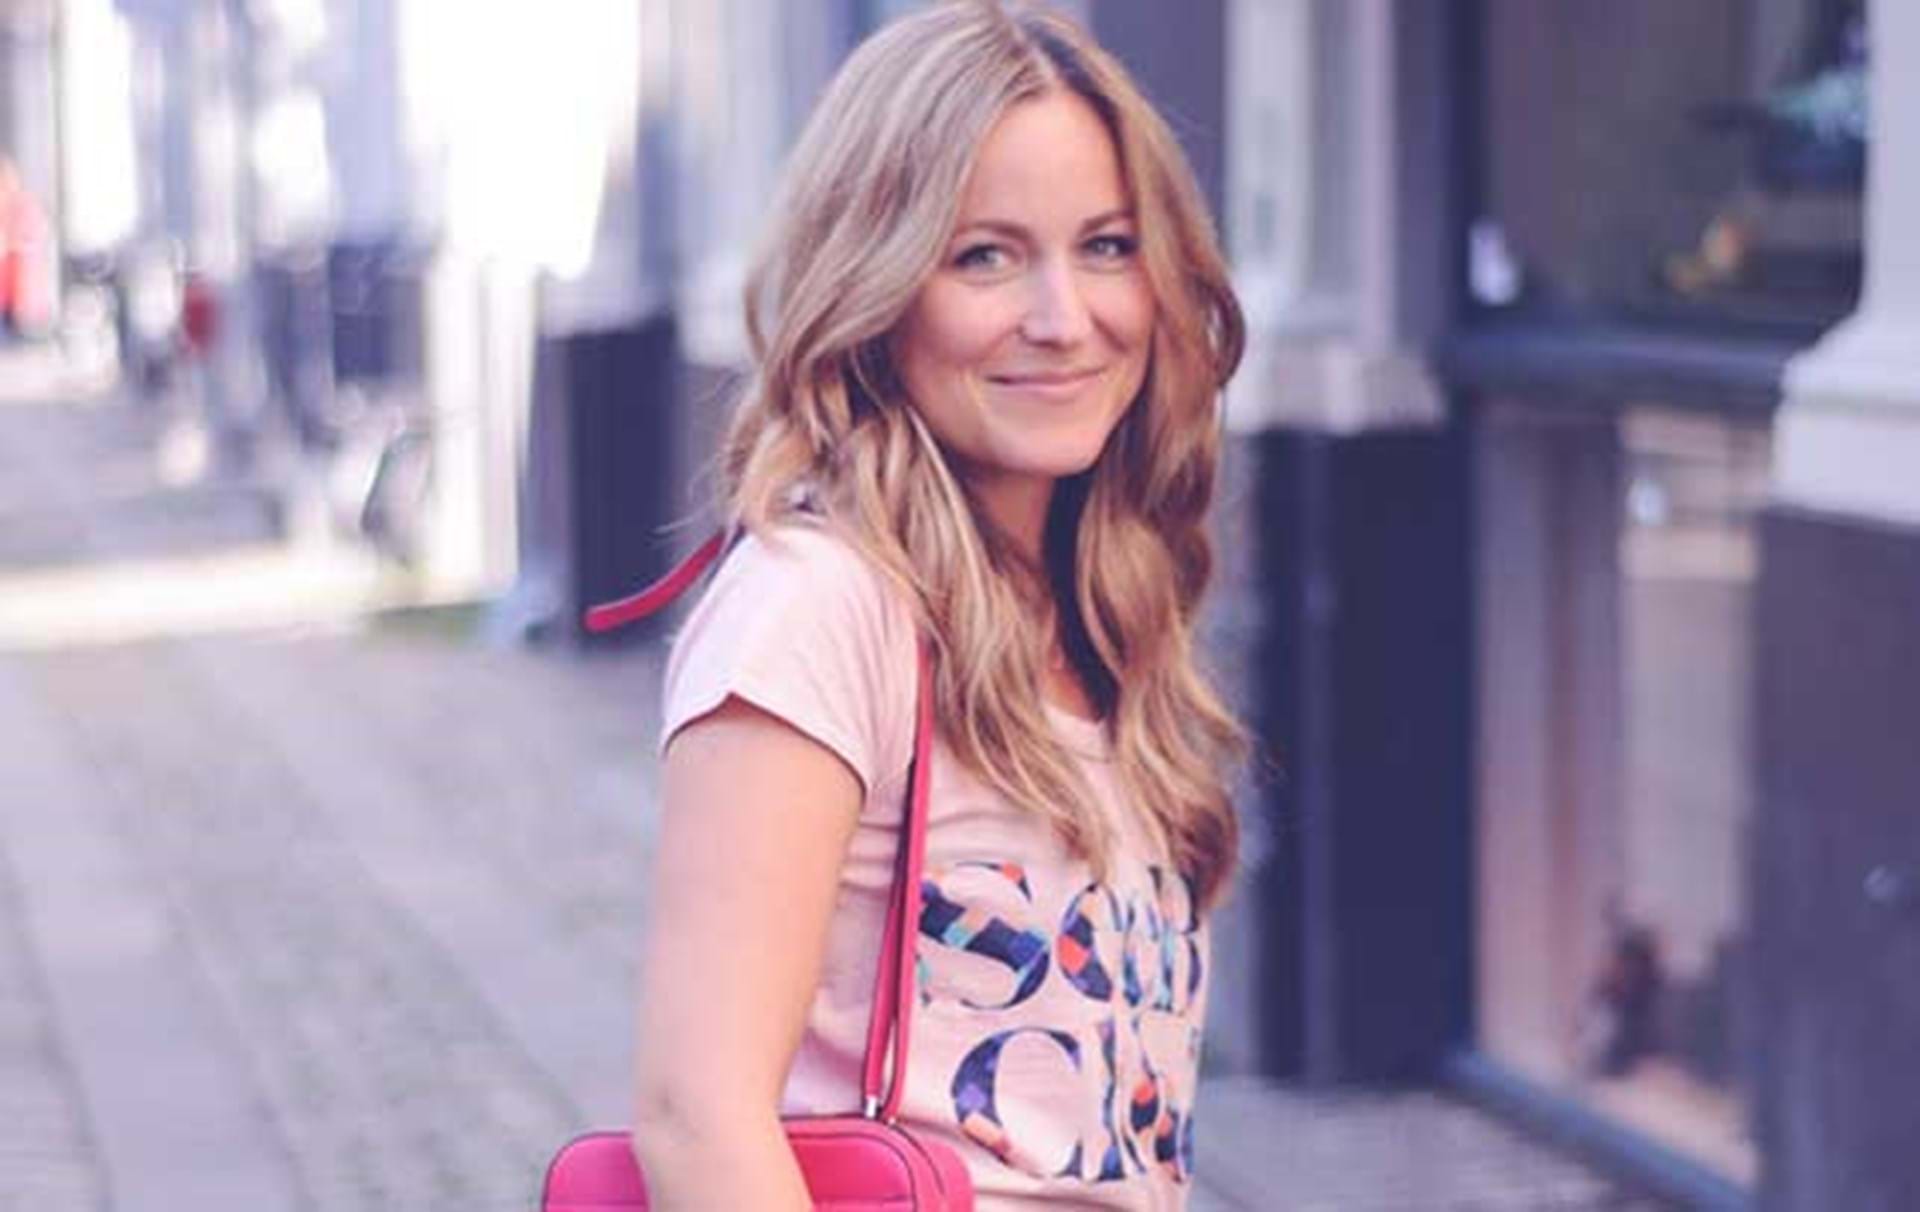 Strålende foran Putte Blogger Emily Salomon: ”Jeg har ikke så meget råderum til at være spontan”  - ALT.dk